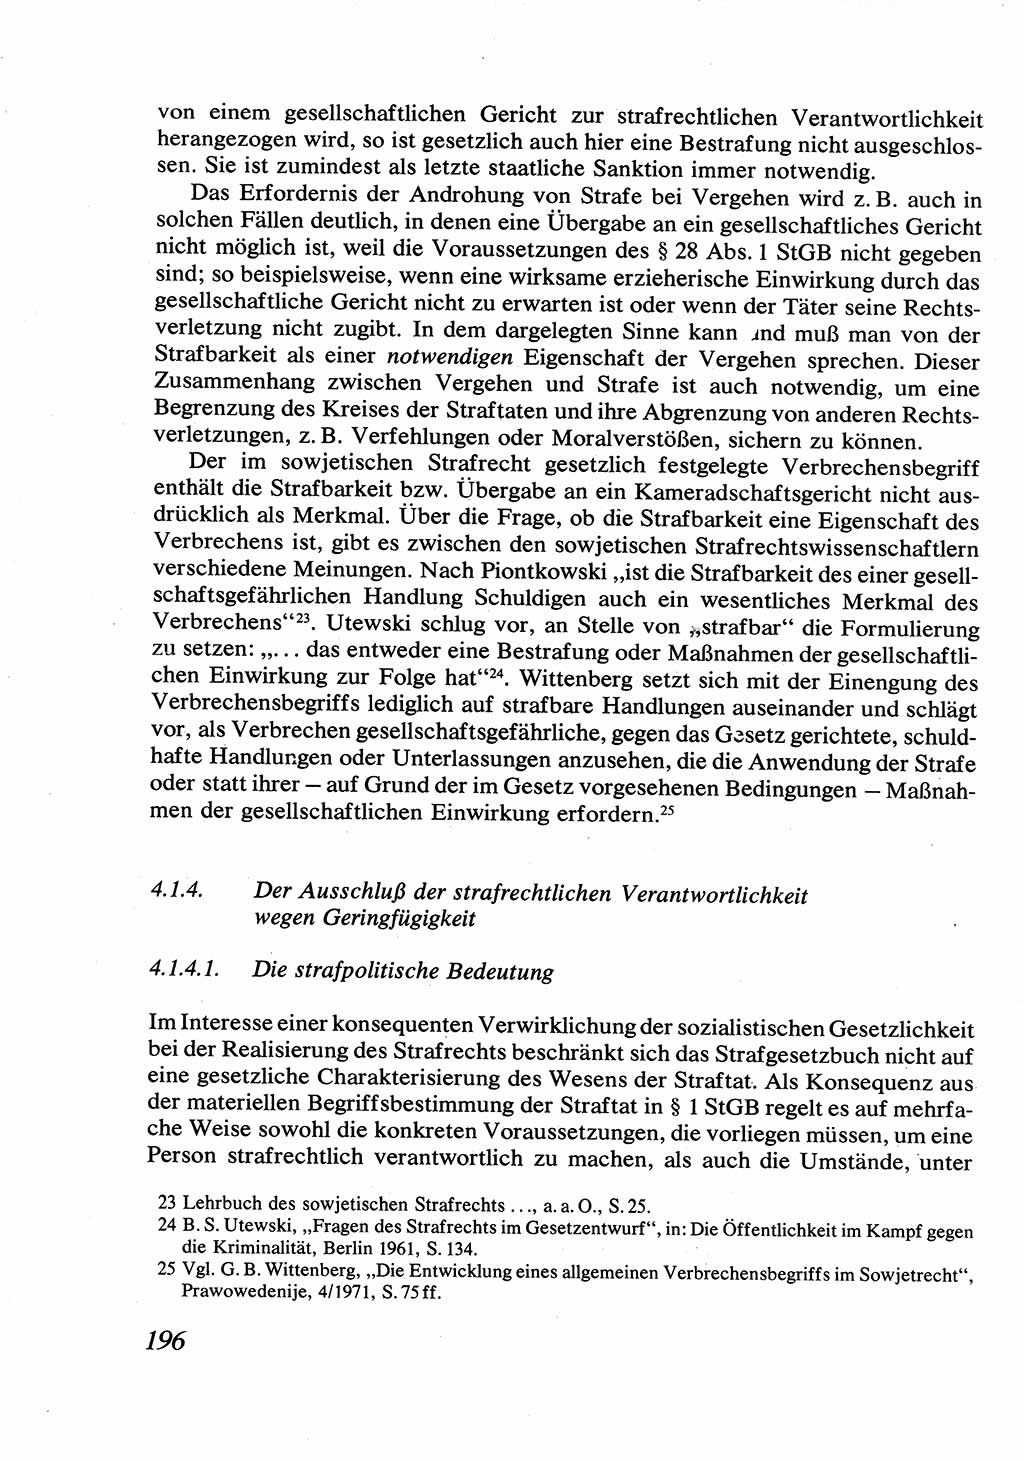 Strafrecht [Deutsche Demokratische Republik (DDR)], Allgemeiner Teil, Lehrbuch 1976, Seite 196 (Strafr. DDR AT Lb. 1976, S. 196)